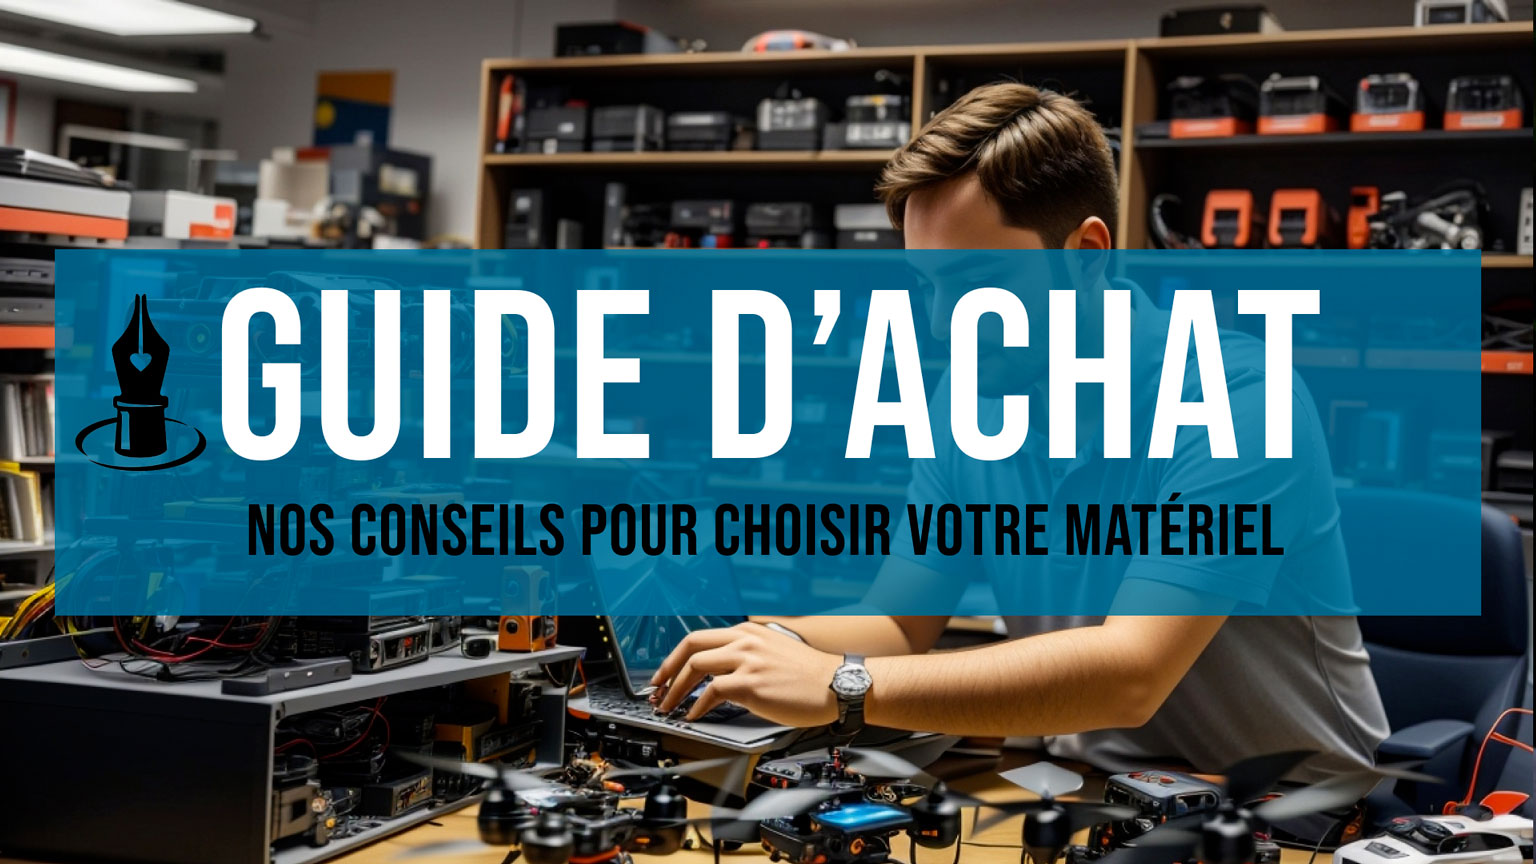 Caméras FPV - Retour vidéo composants pour drones sur Hexadrone.fr